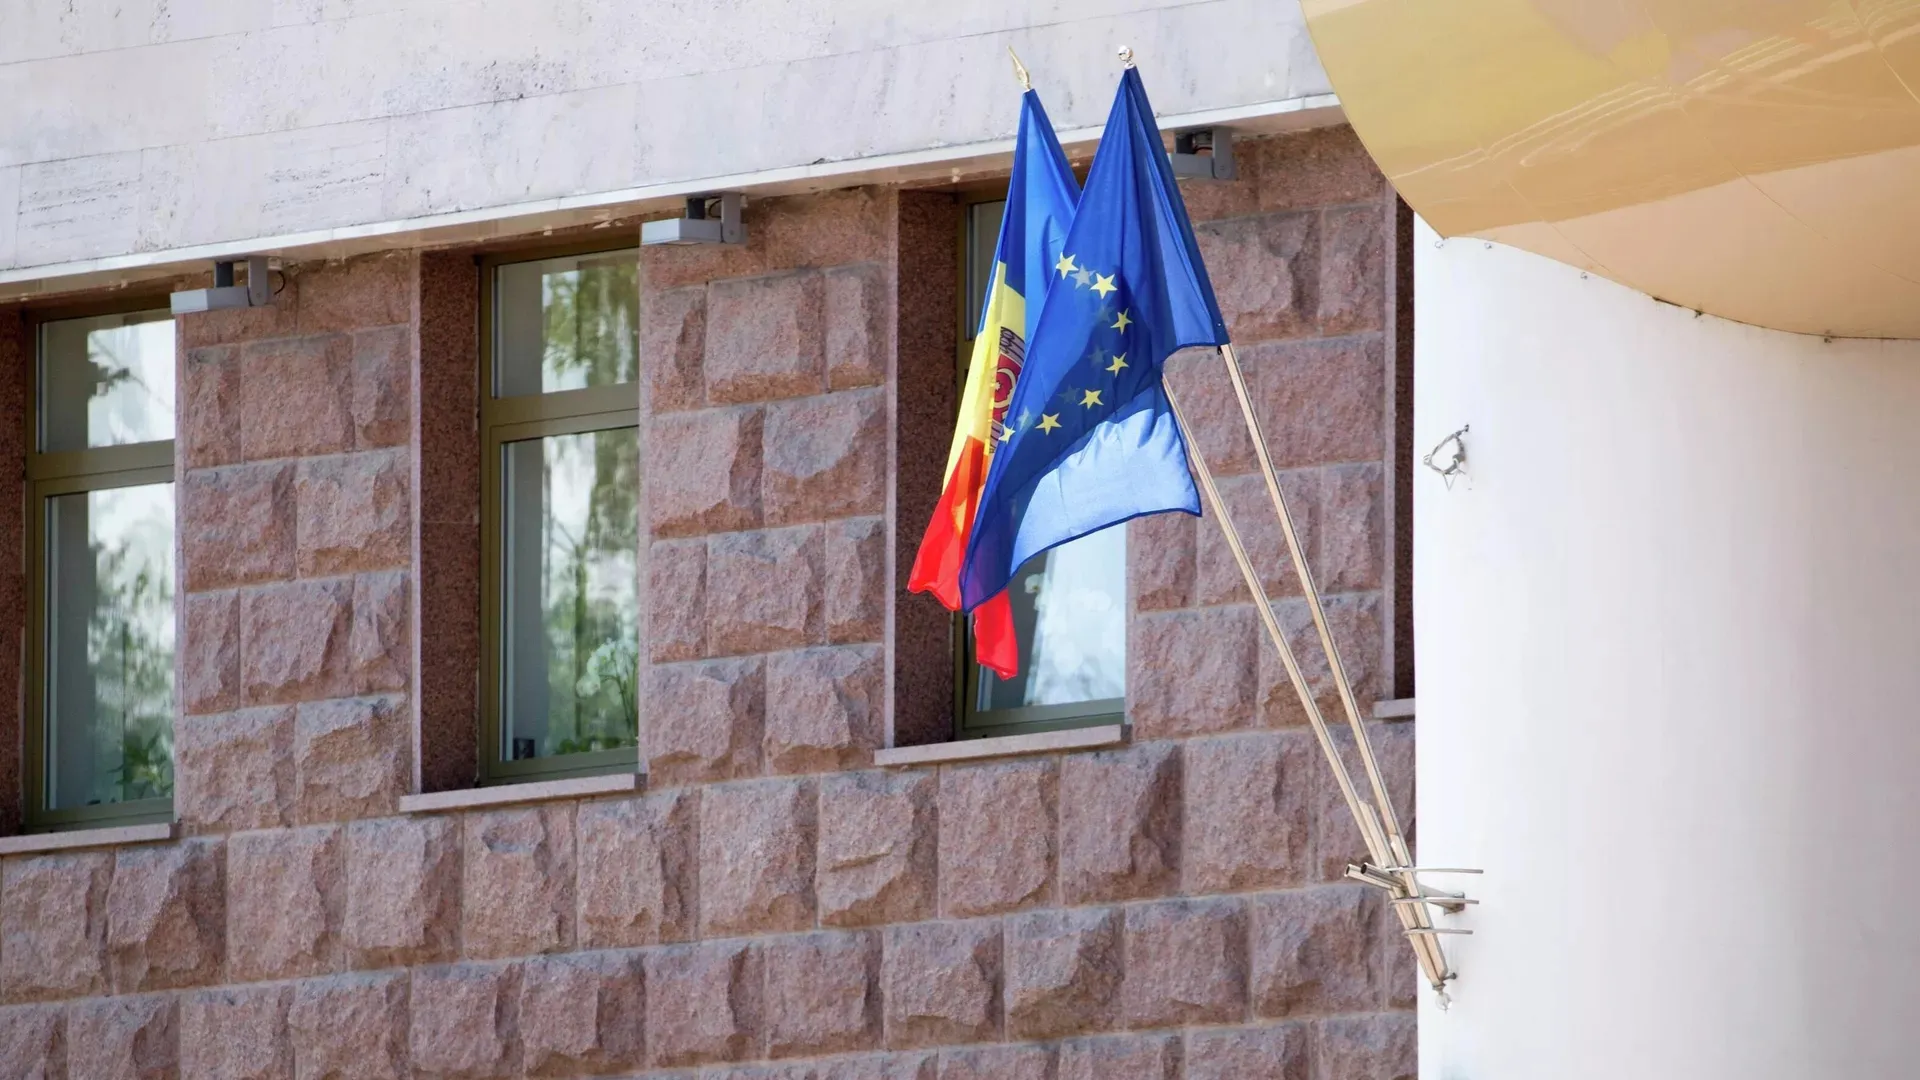 Шор заявил, что проект изменений в Конституцию Молдовы лишает страну суверенитета